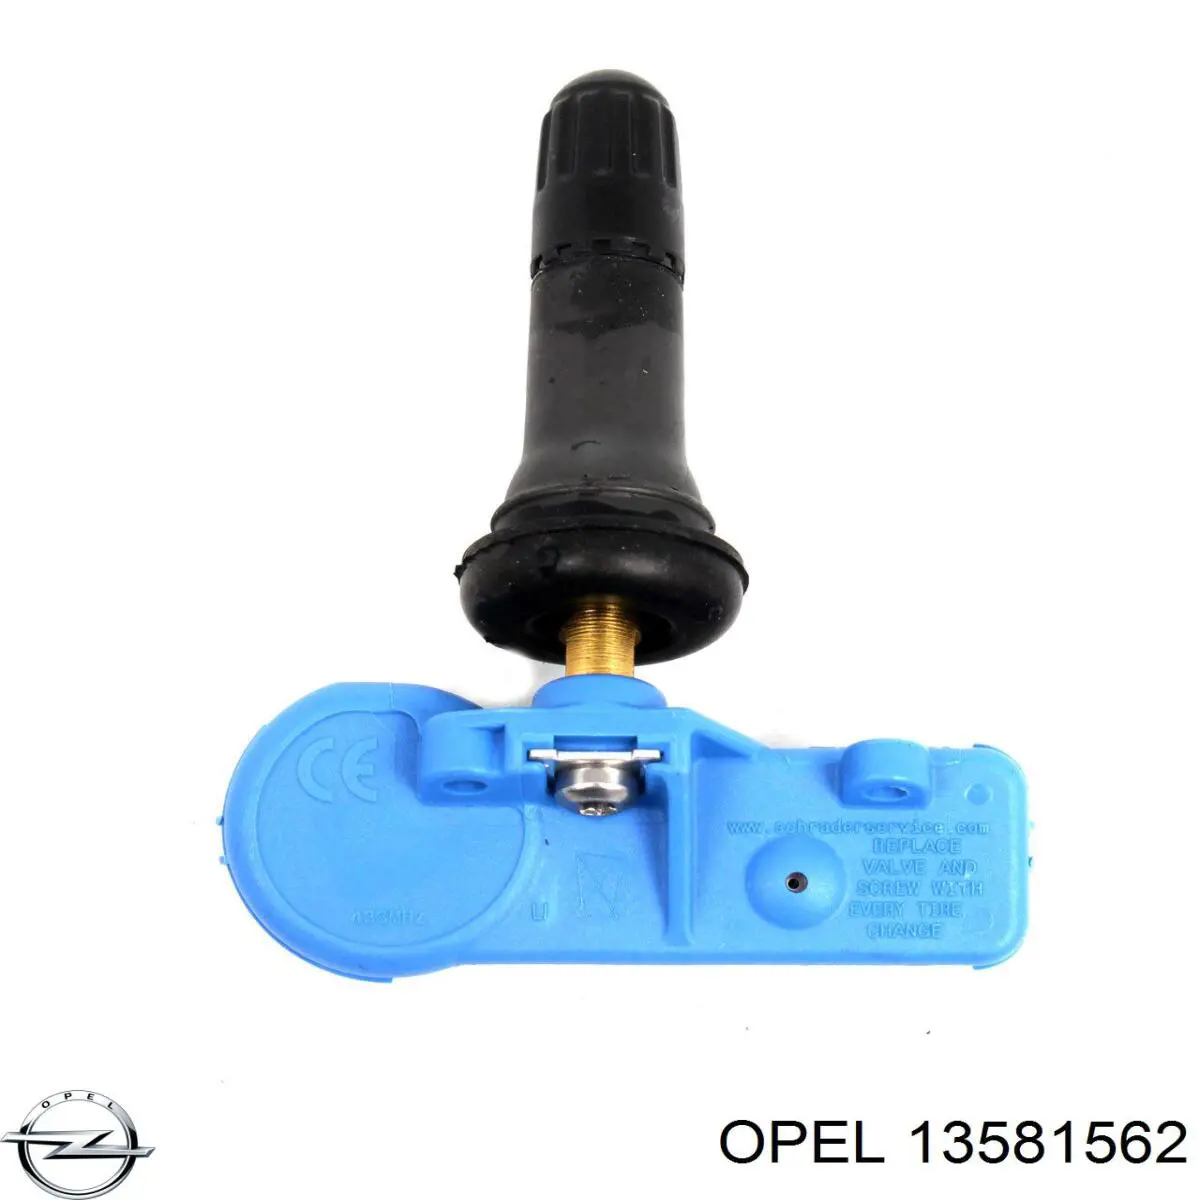 13581562 Opel sensor de pressão de ar nos pneus